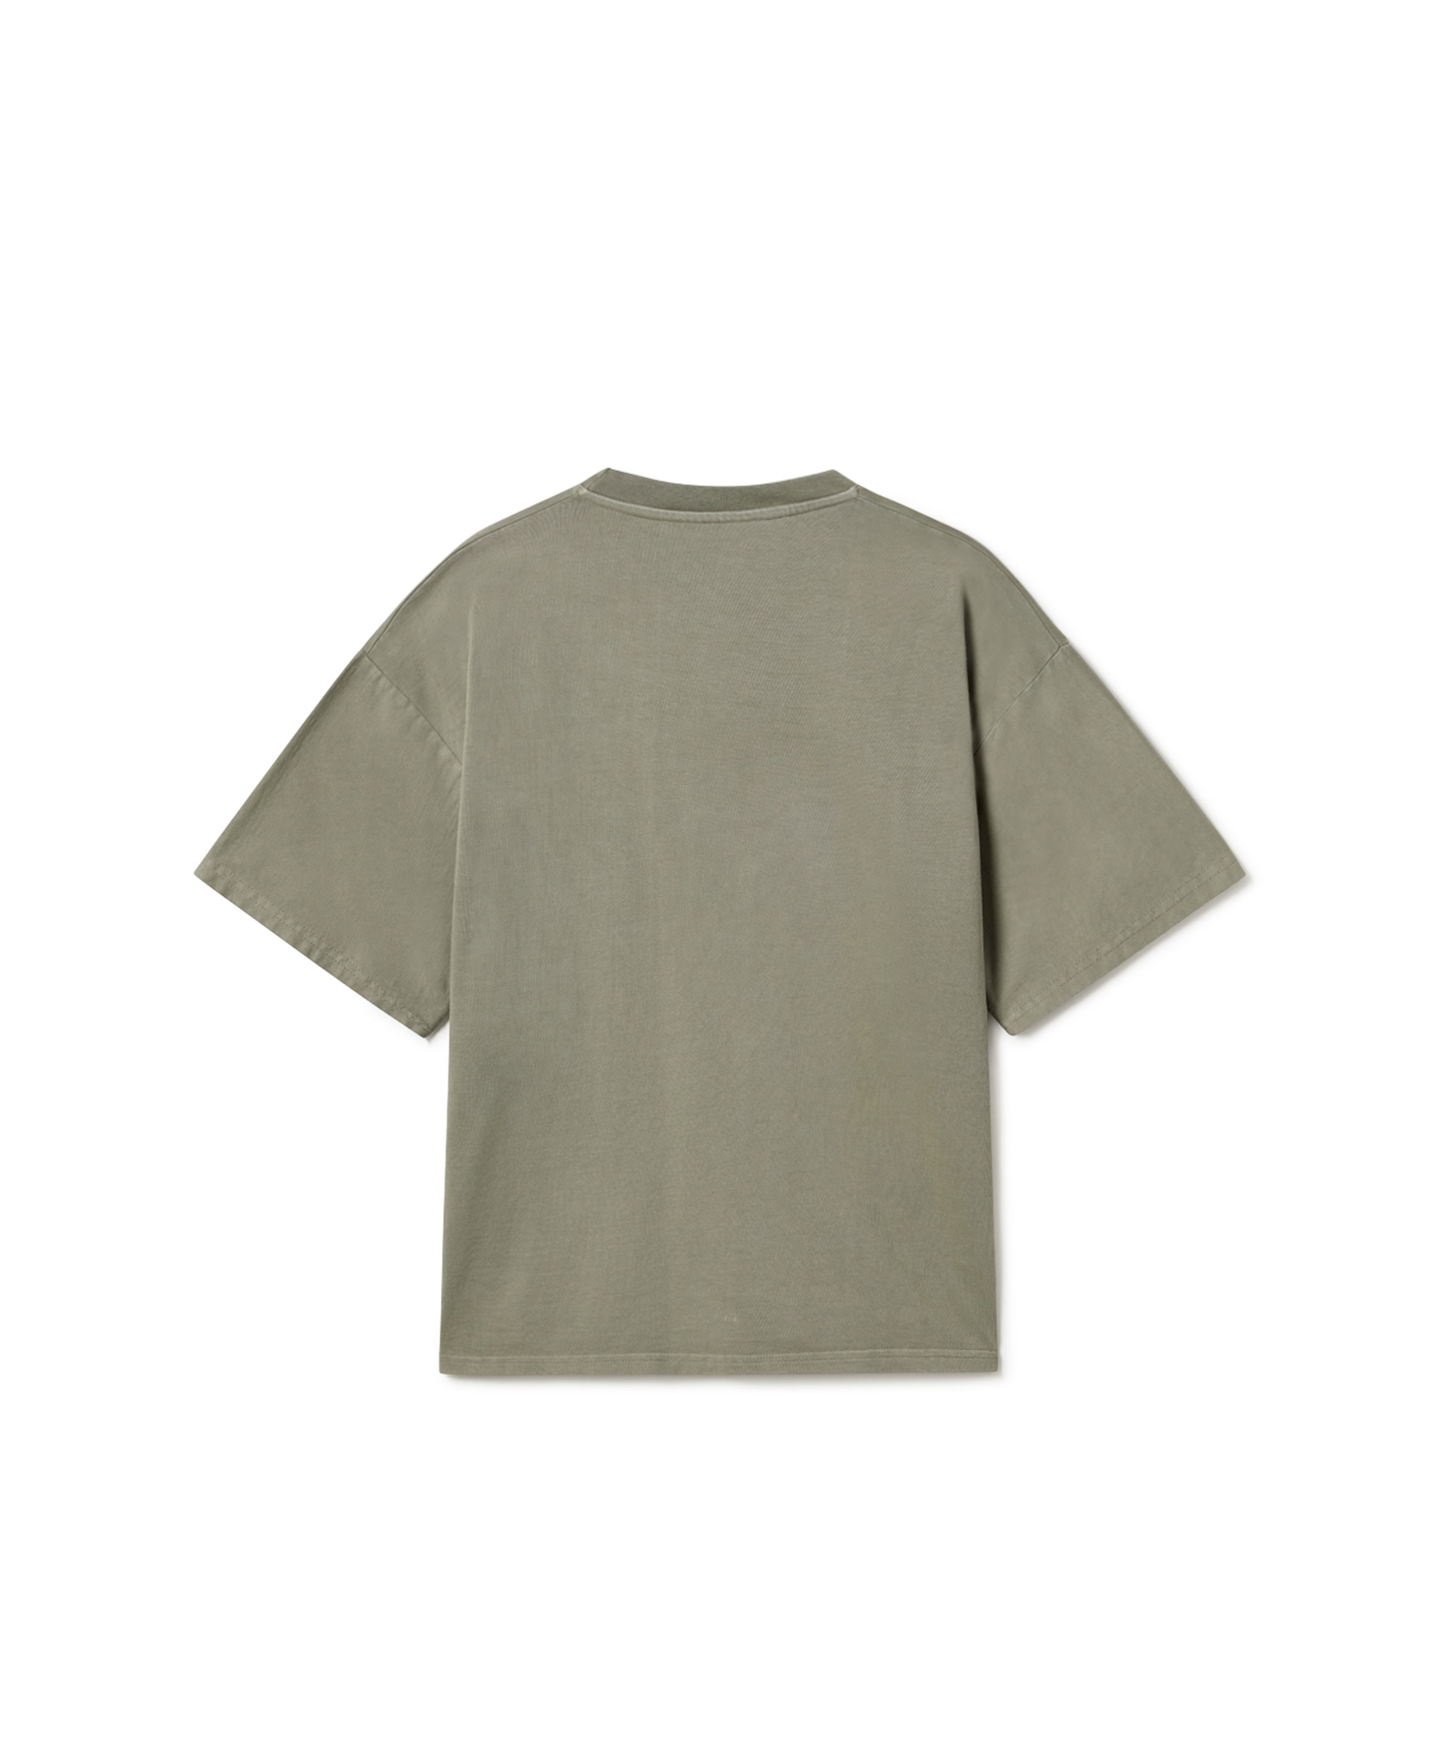 300 GSM 'Vintage Olive Green' T-Shirt